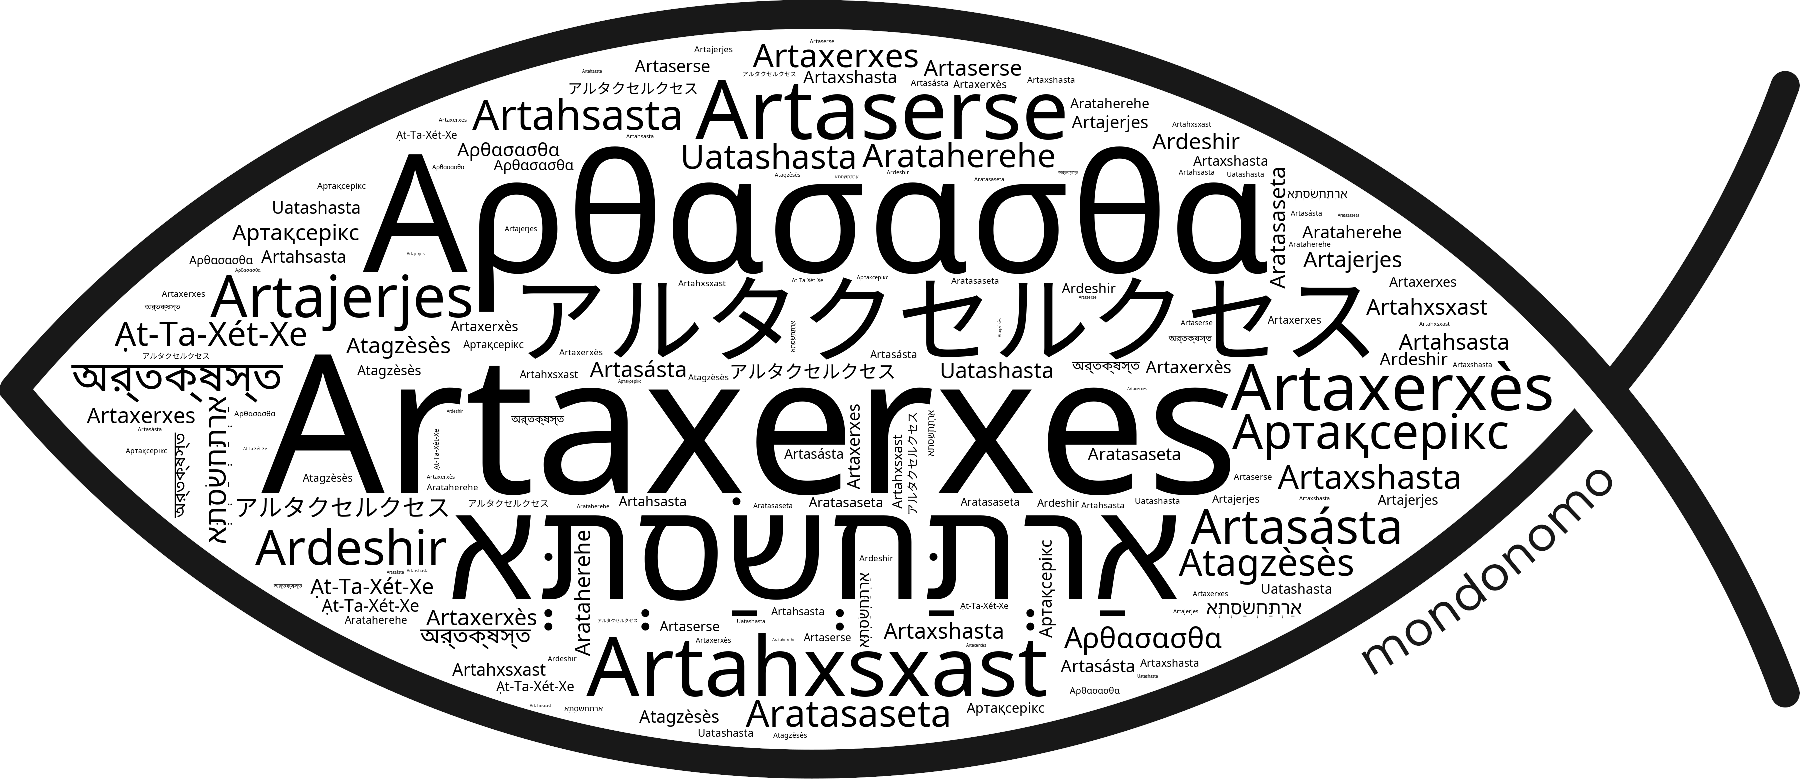 Name Artaxerxes in the world's Bibles